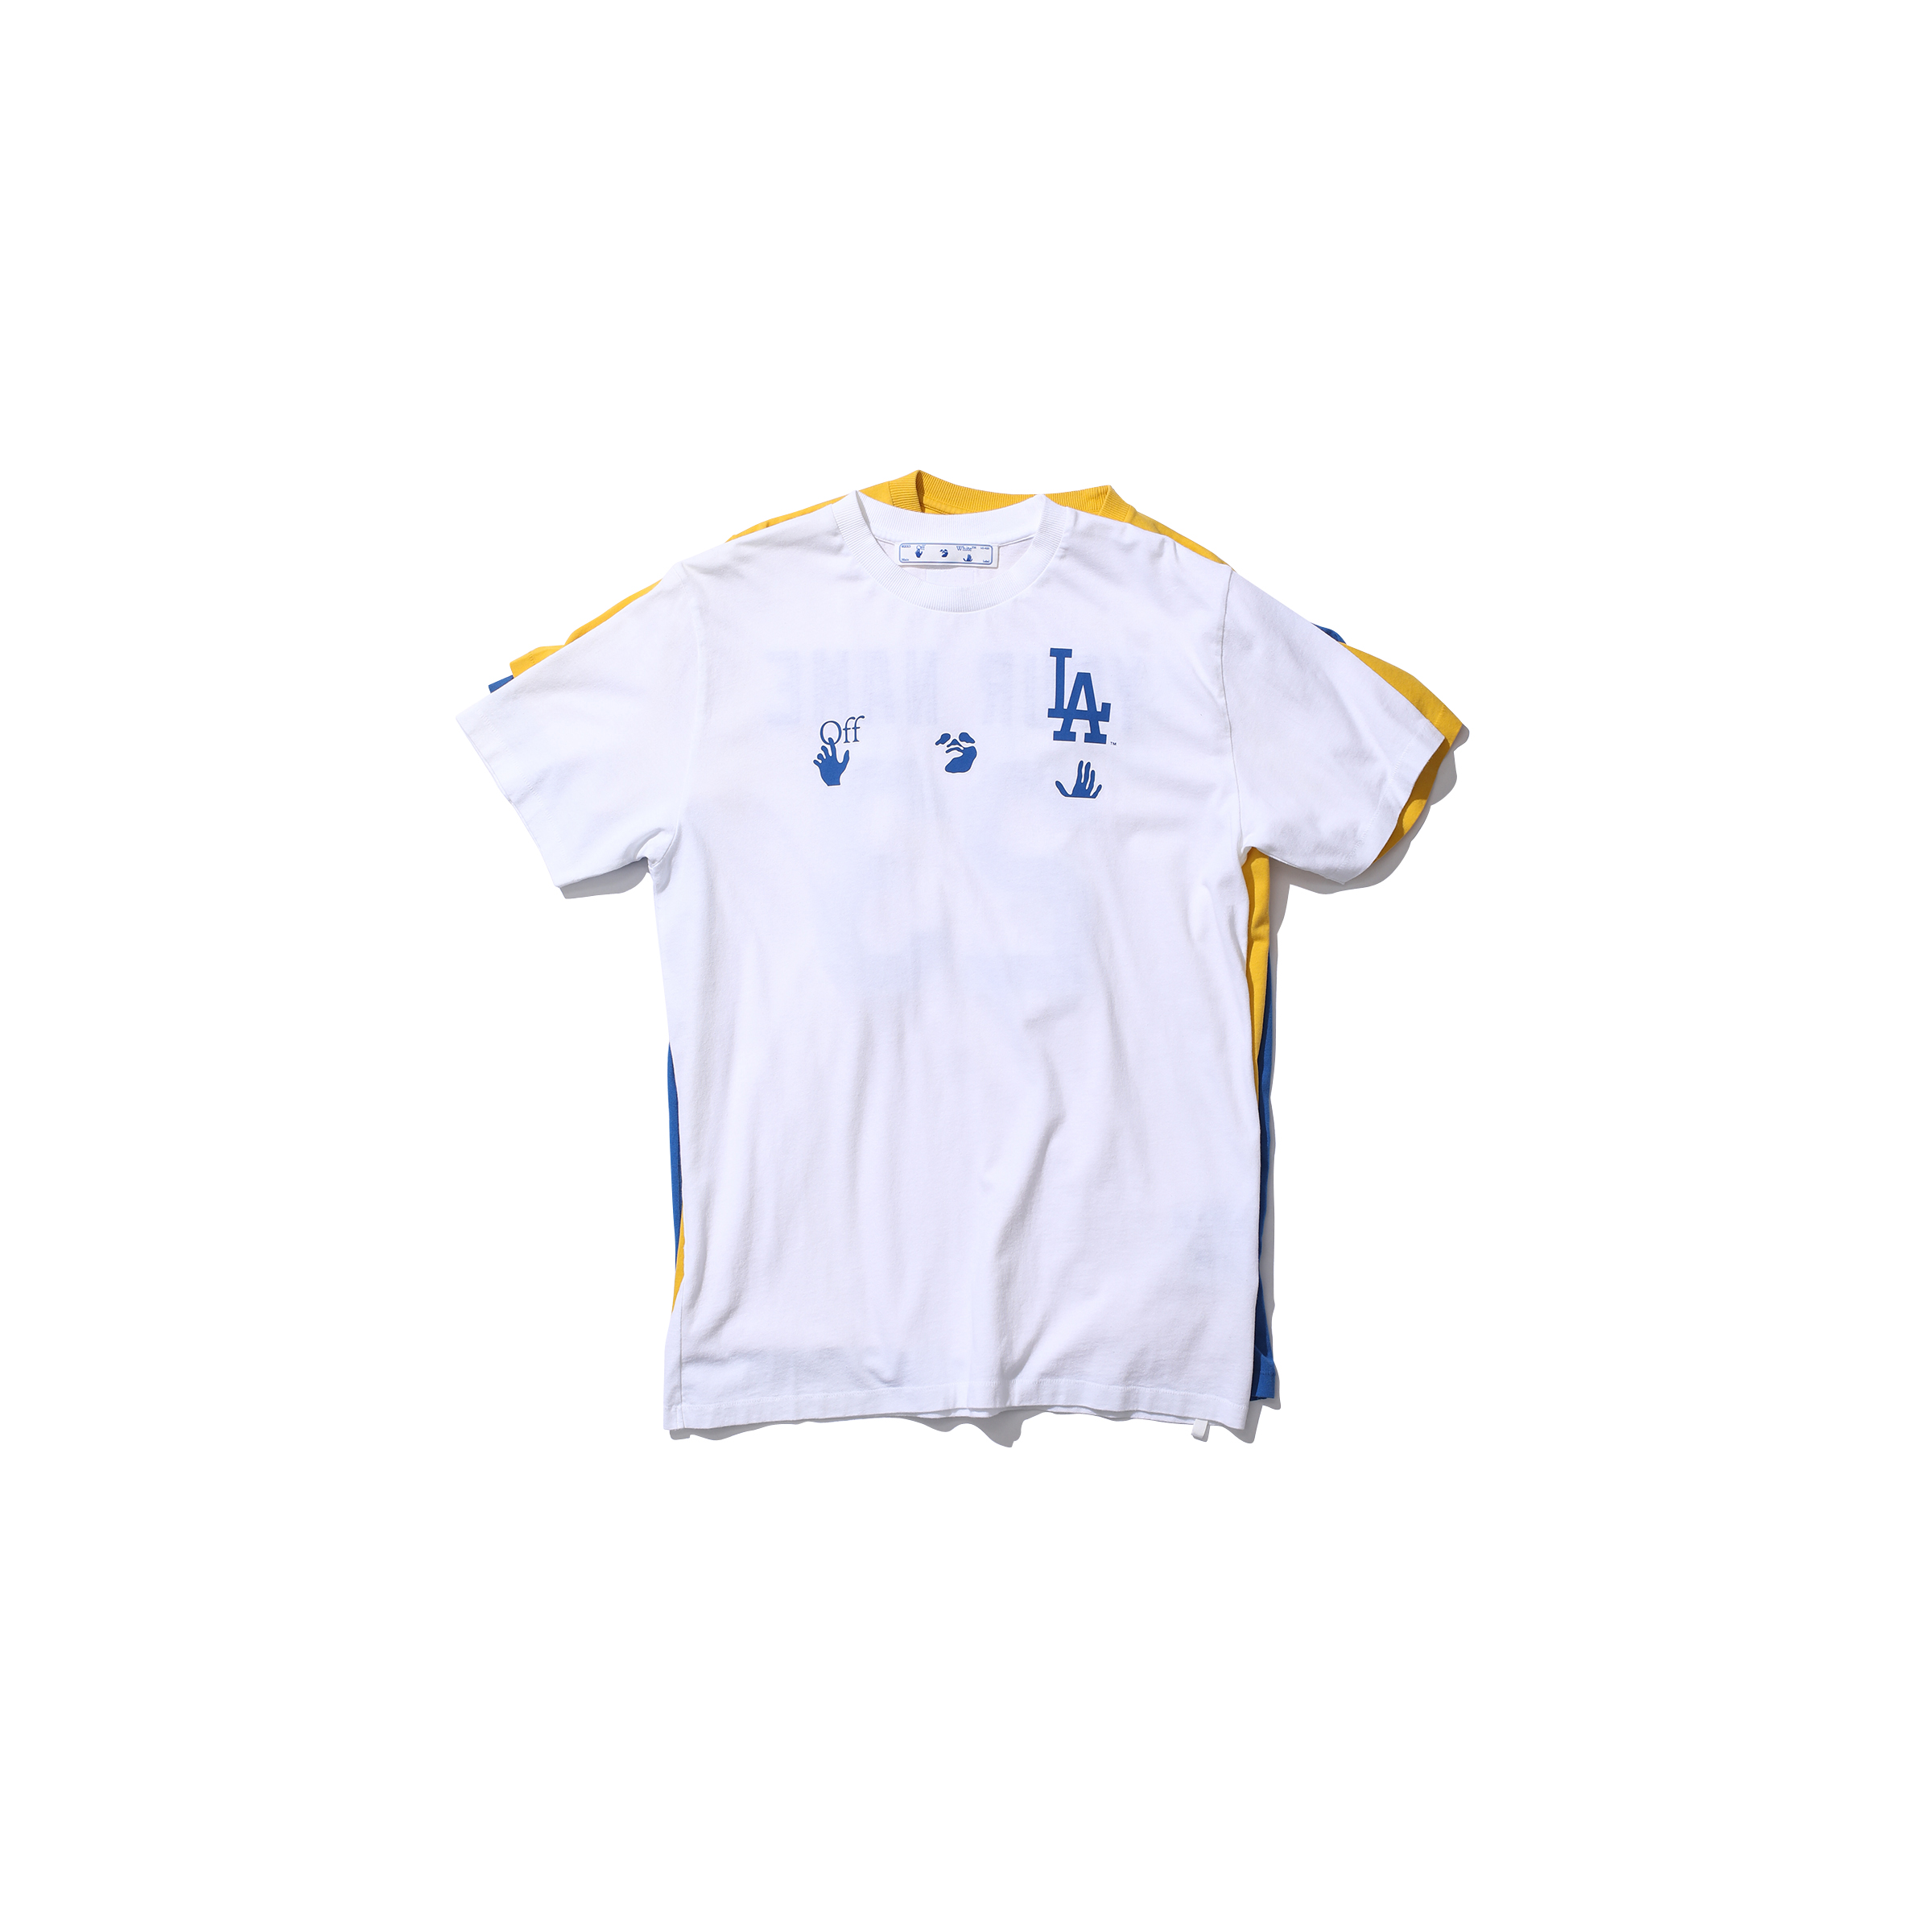 オフ-ホワイト c/o ヴァージル アブロー™のTシャツ